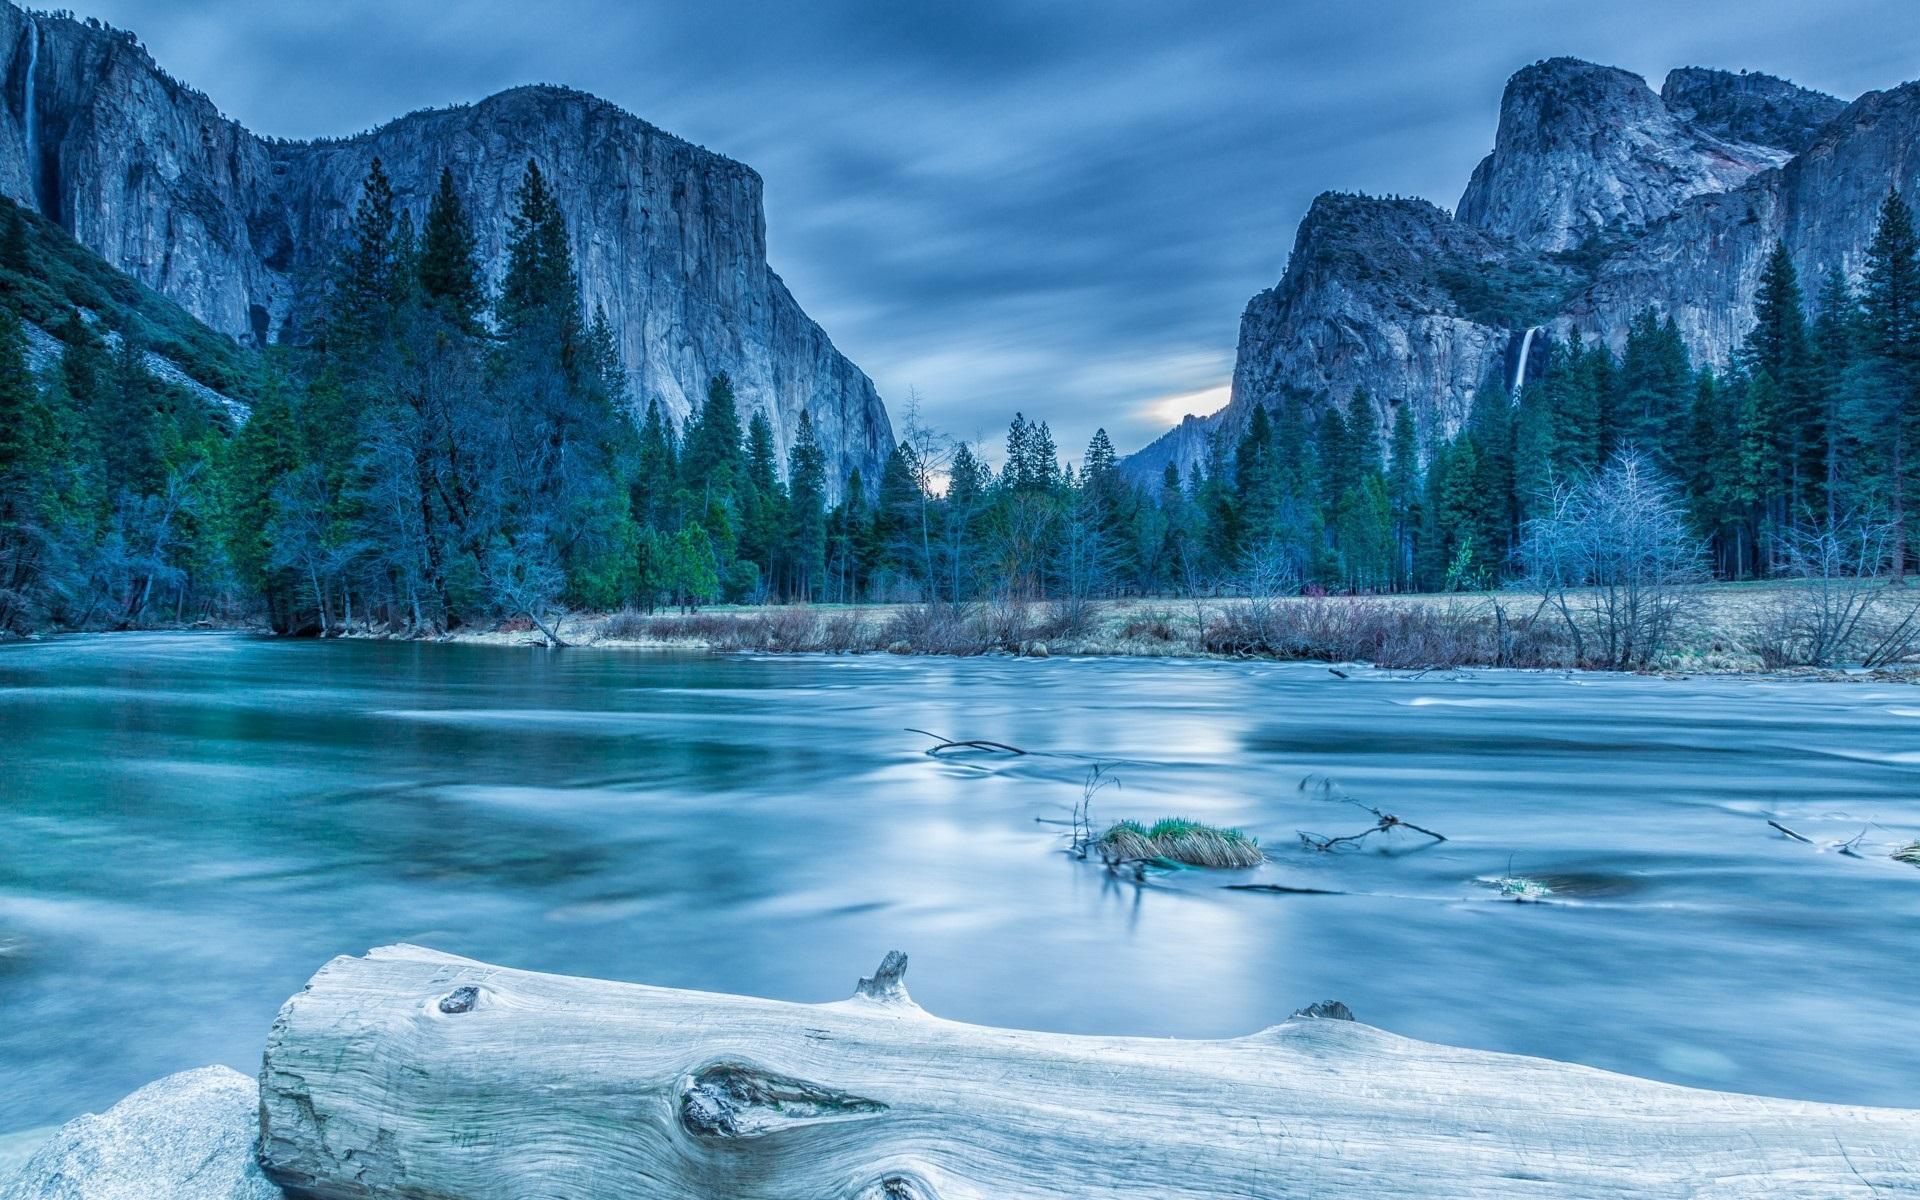 Wallpaper Yosemite National Park, trees, mountains, lake, winter